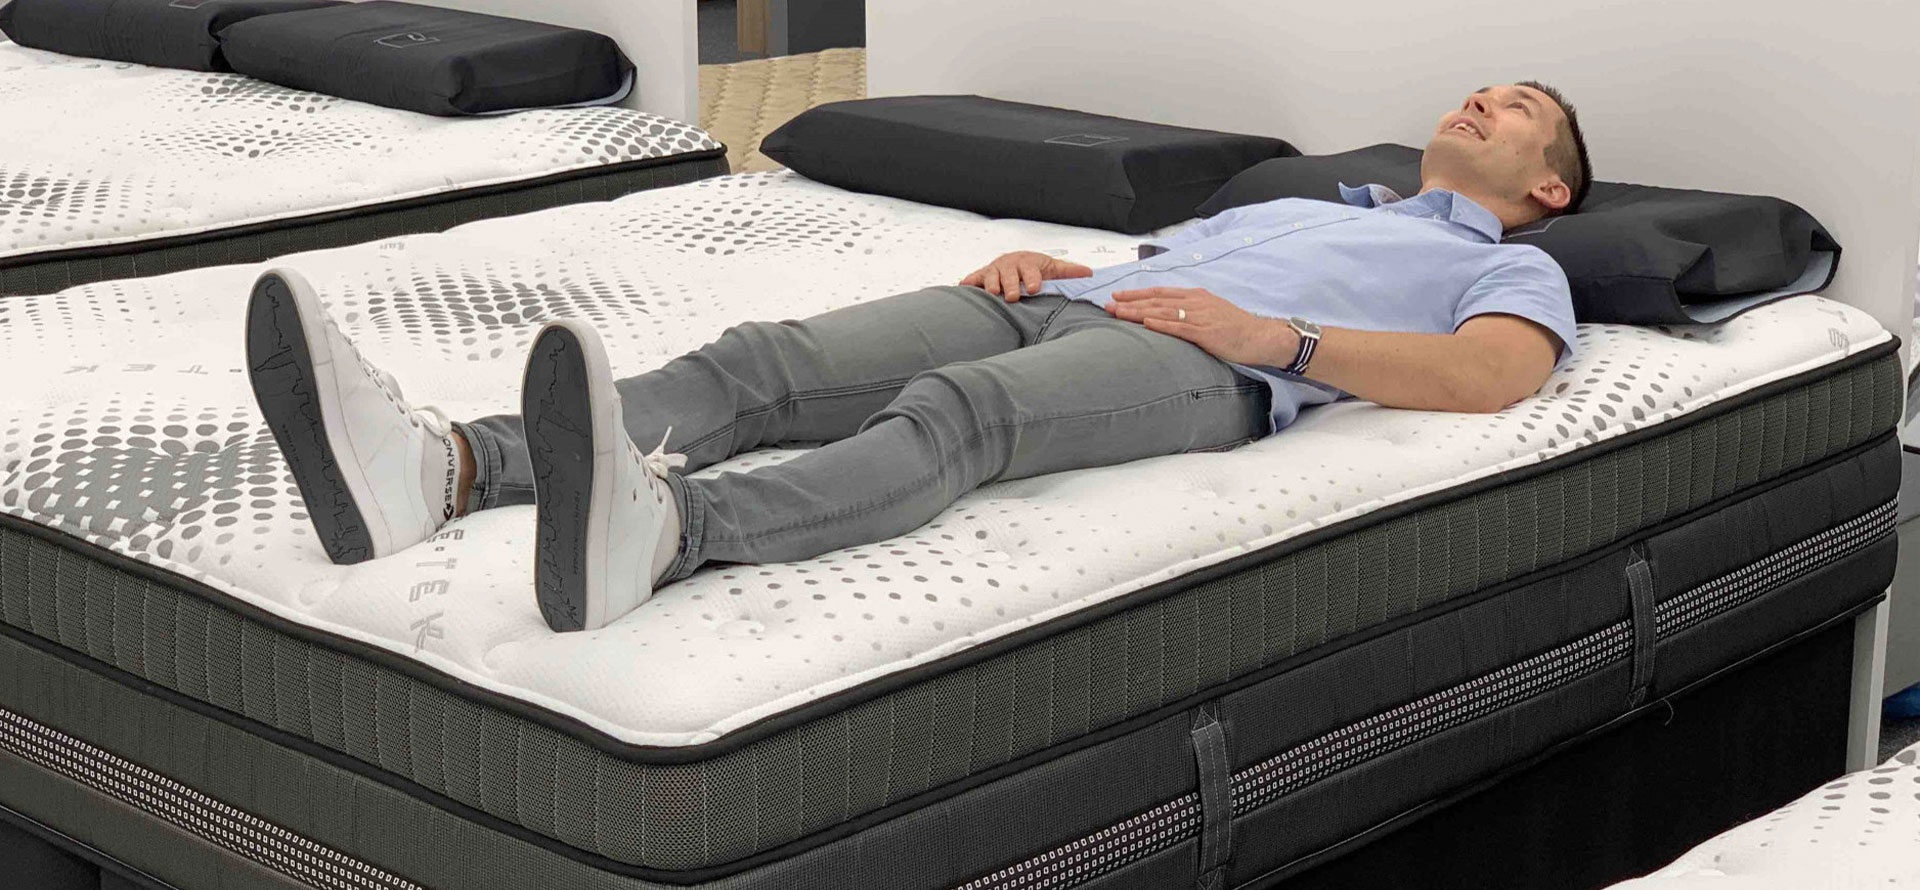 A man sleeping on mattress.